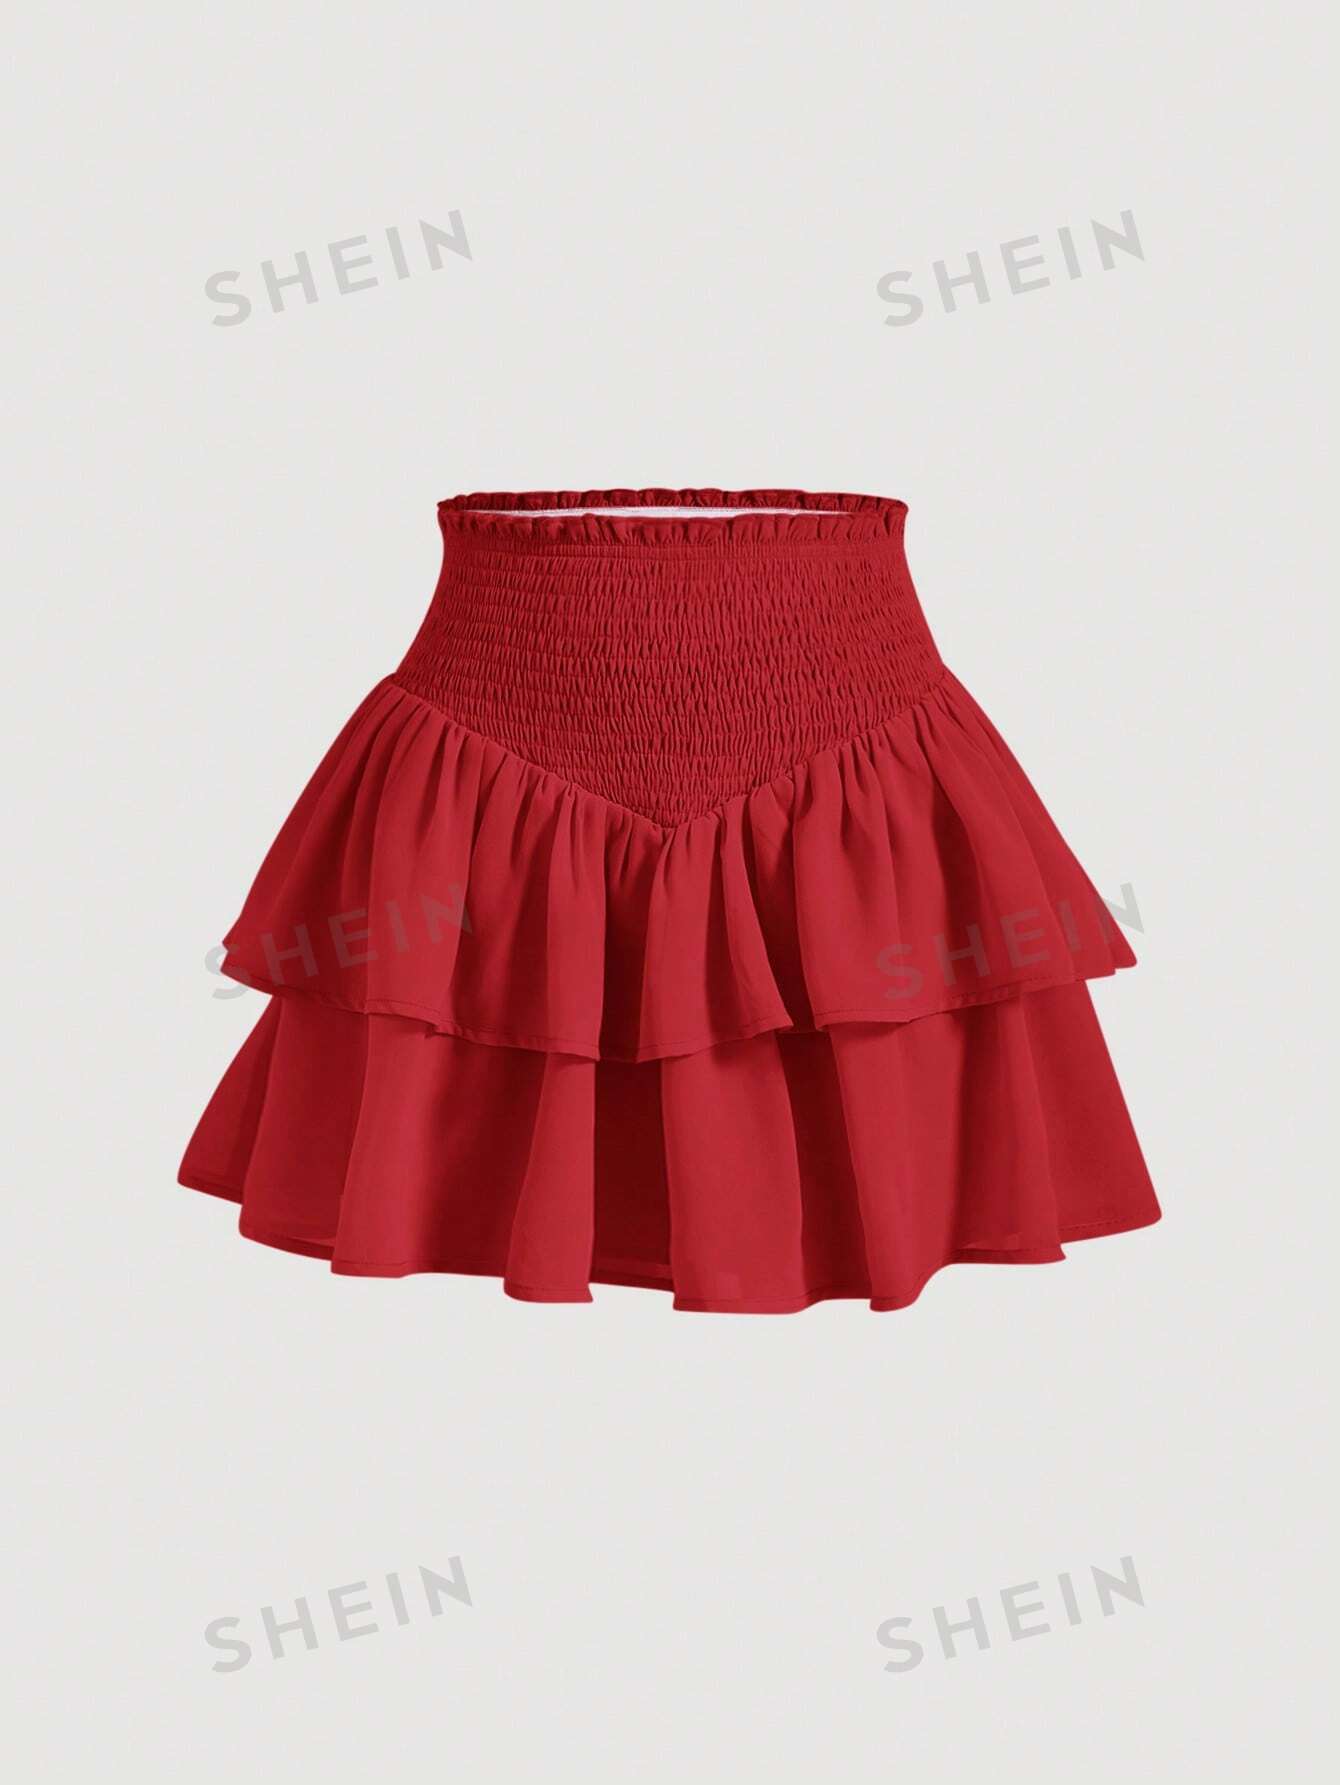 SHEIN MOD SHEIN MOD женская двухслойная мини-юбка с асимметричным подолом и рюшами и присборенной талией, красный shein mod белая кружевная декорированная асимметричная юбка с рюшами по подолу белый